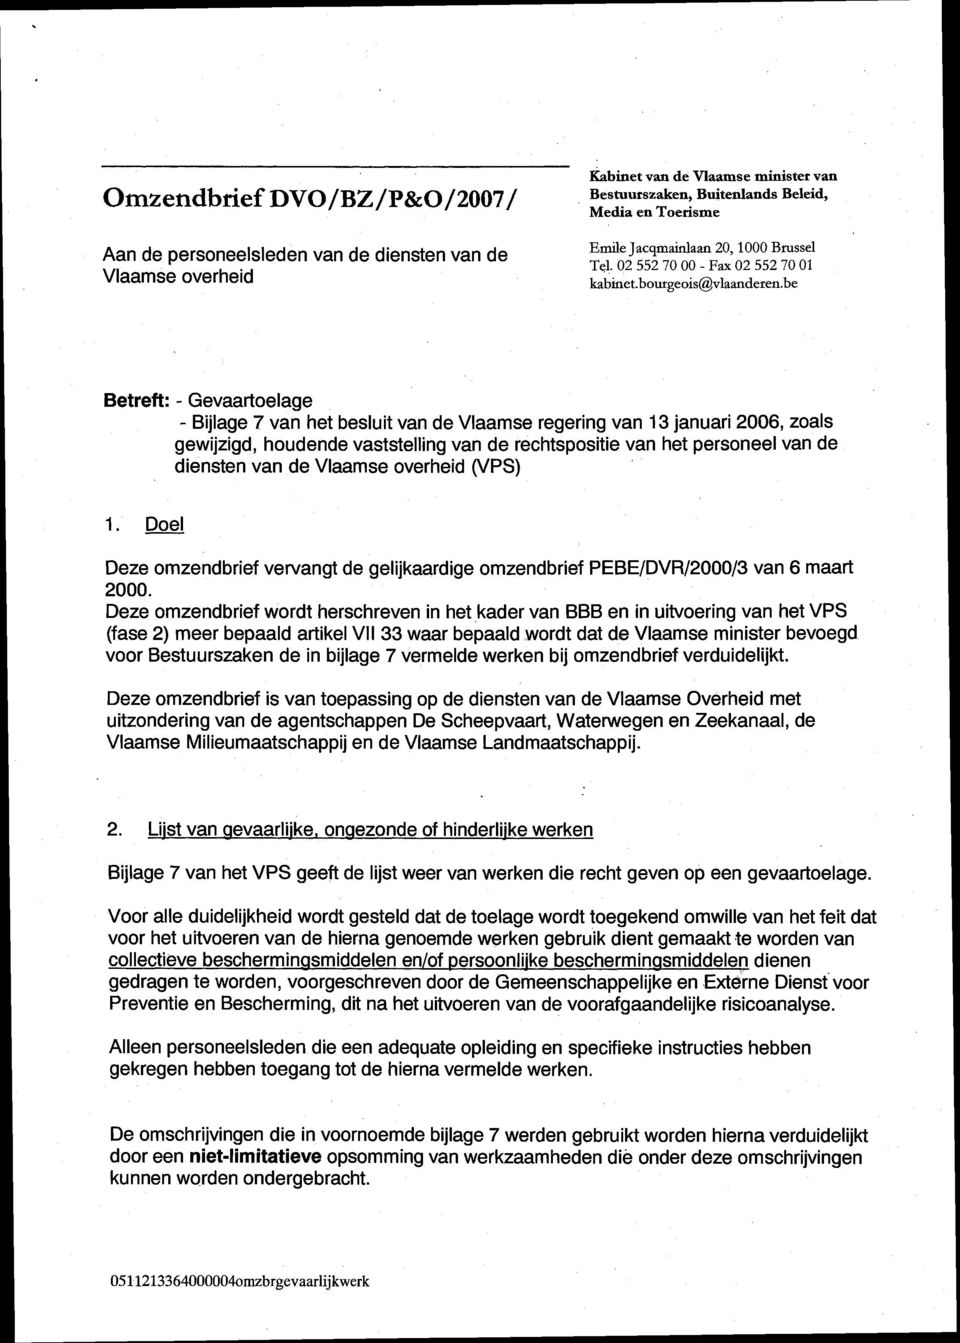 be Betreft: - Gevaartoelage - Bijlage 7 van het besluit van de Vlaamse regering van 13 januari 2006, zoals gewijzigd, houdende vaststelling van de rechtspositie van het personeel van de diensten van